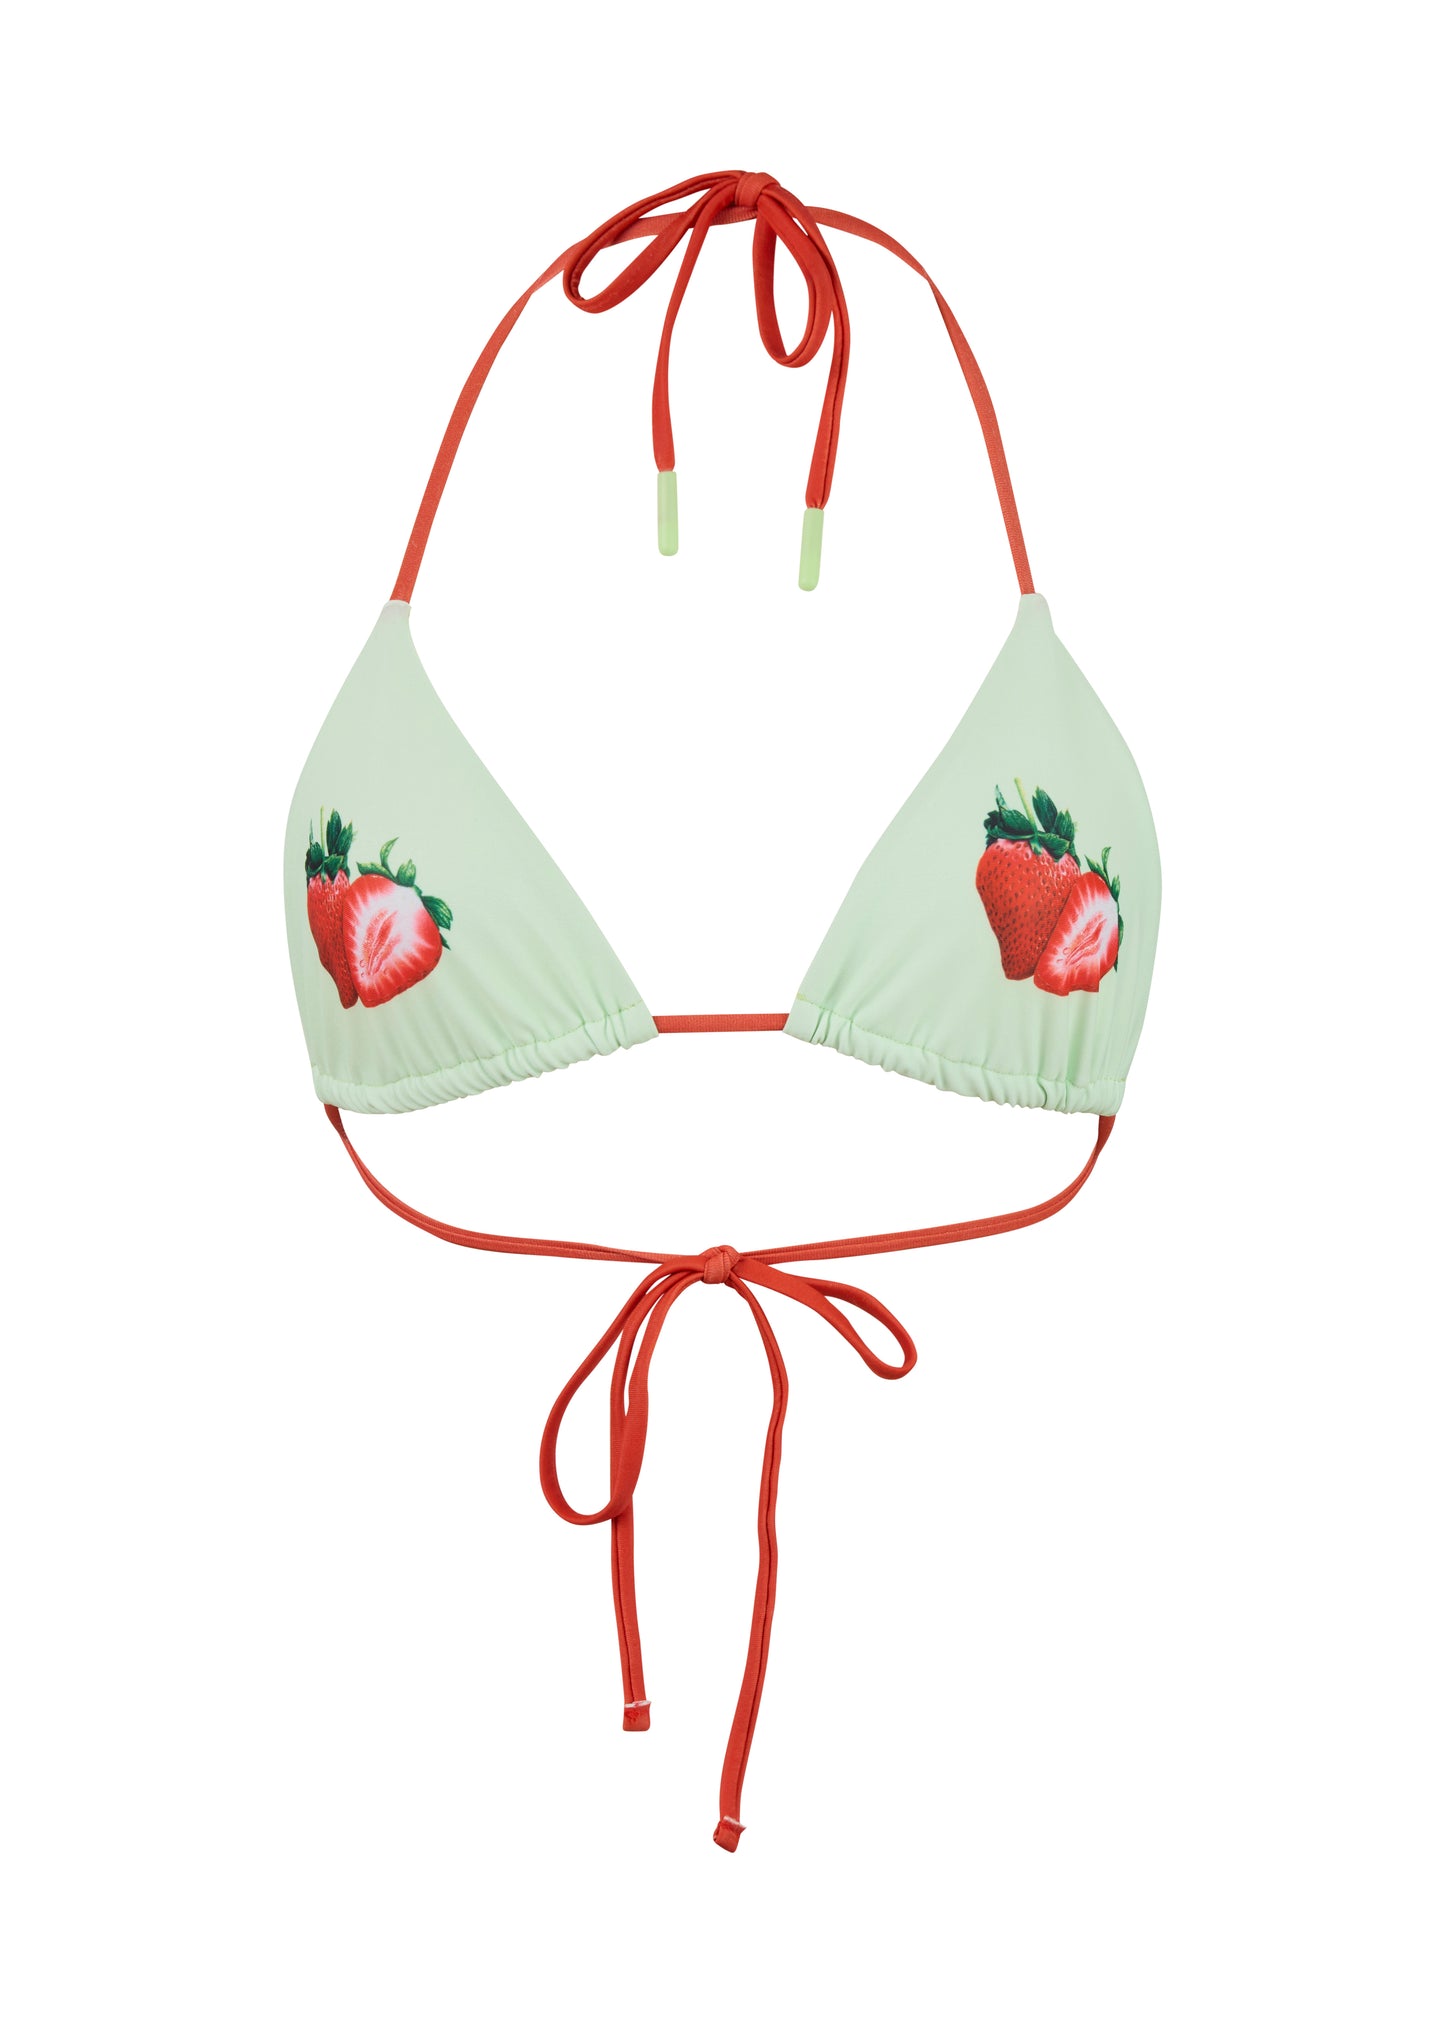 Strawberry Bikini Top